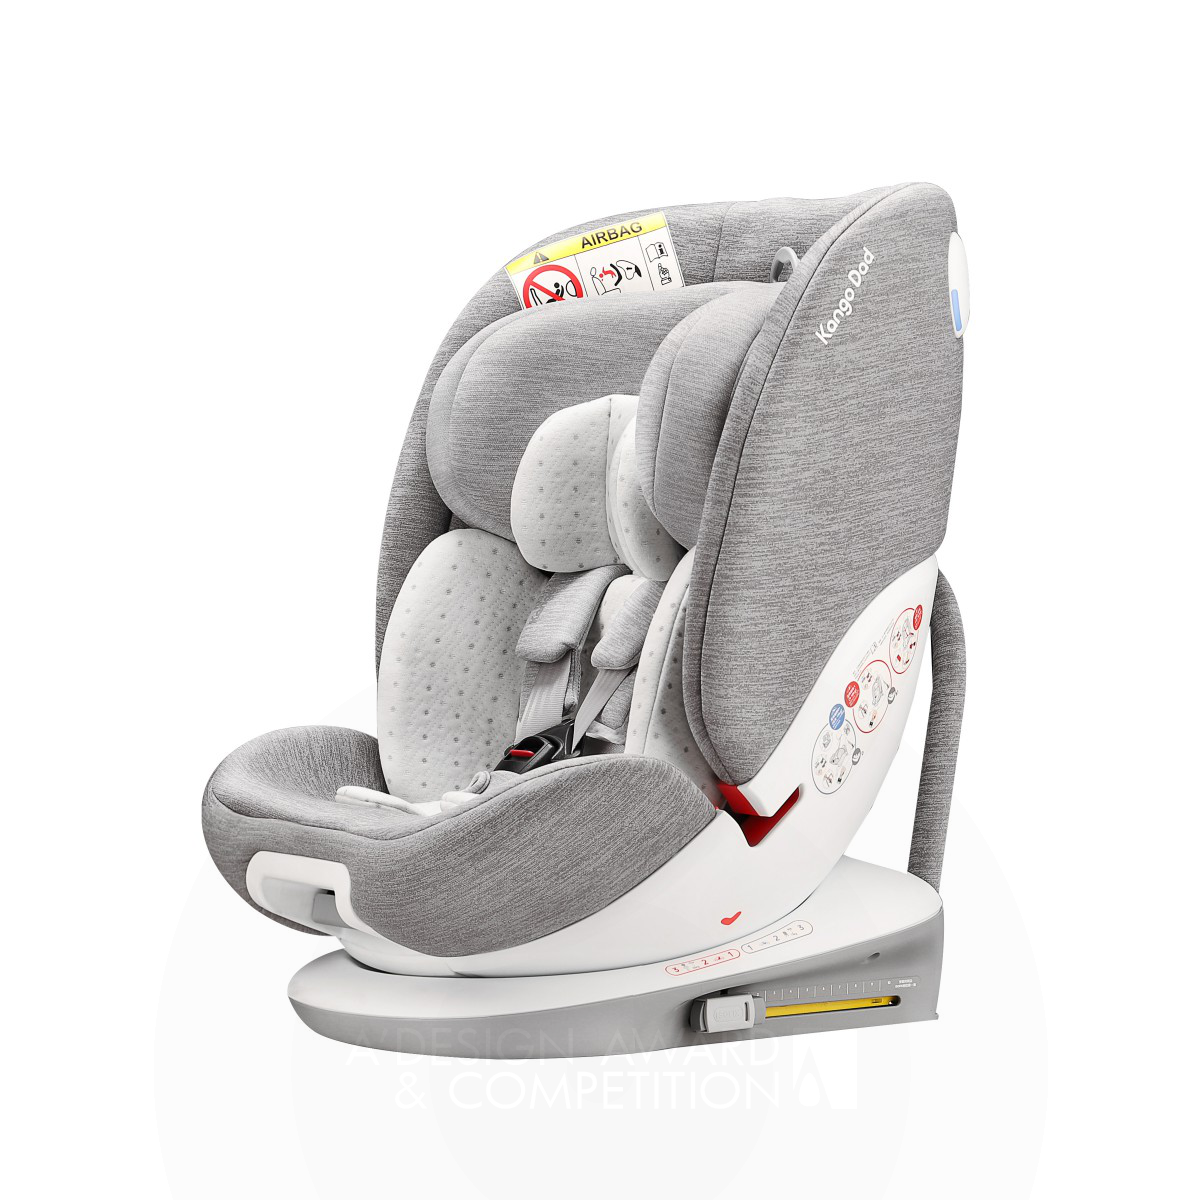 Kango Dad Funtrip V141 : Un siège auto pour enfants polyvalent et sûr